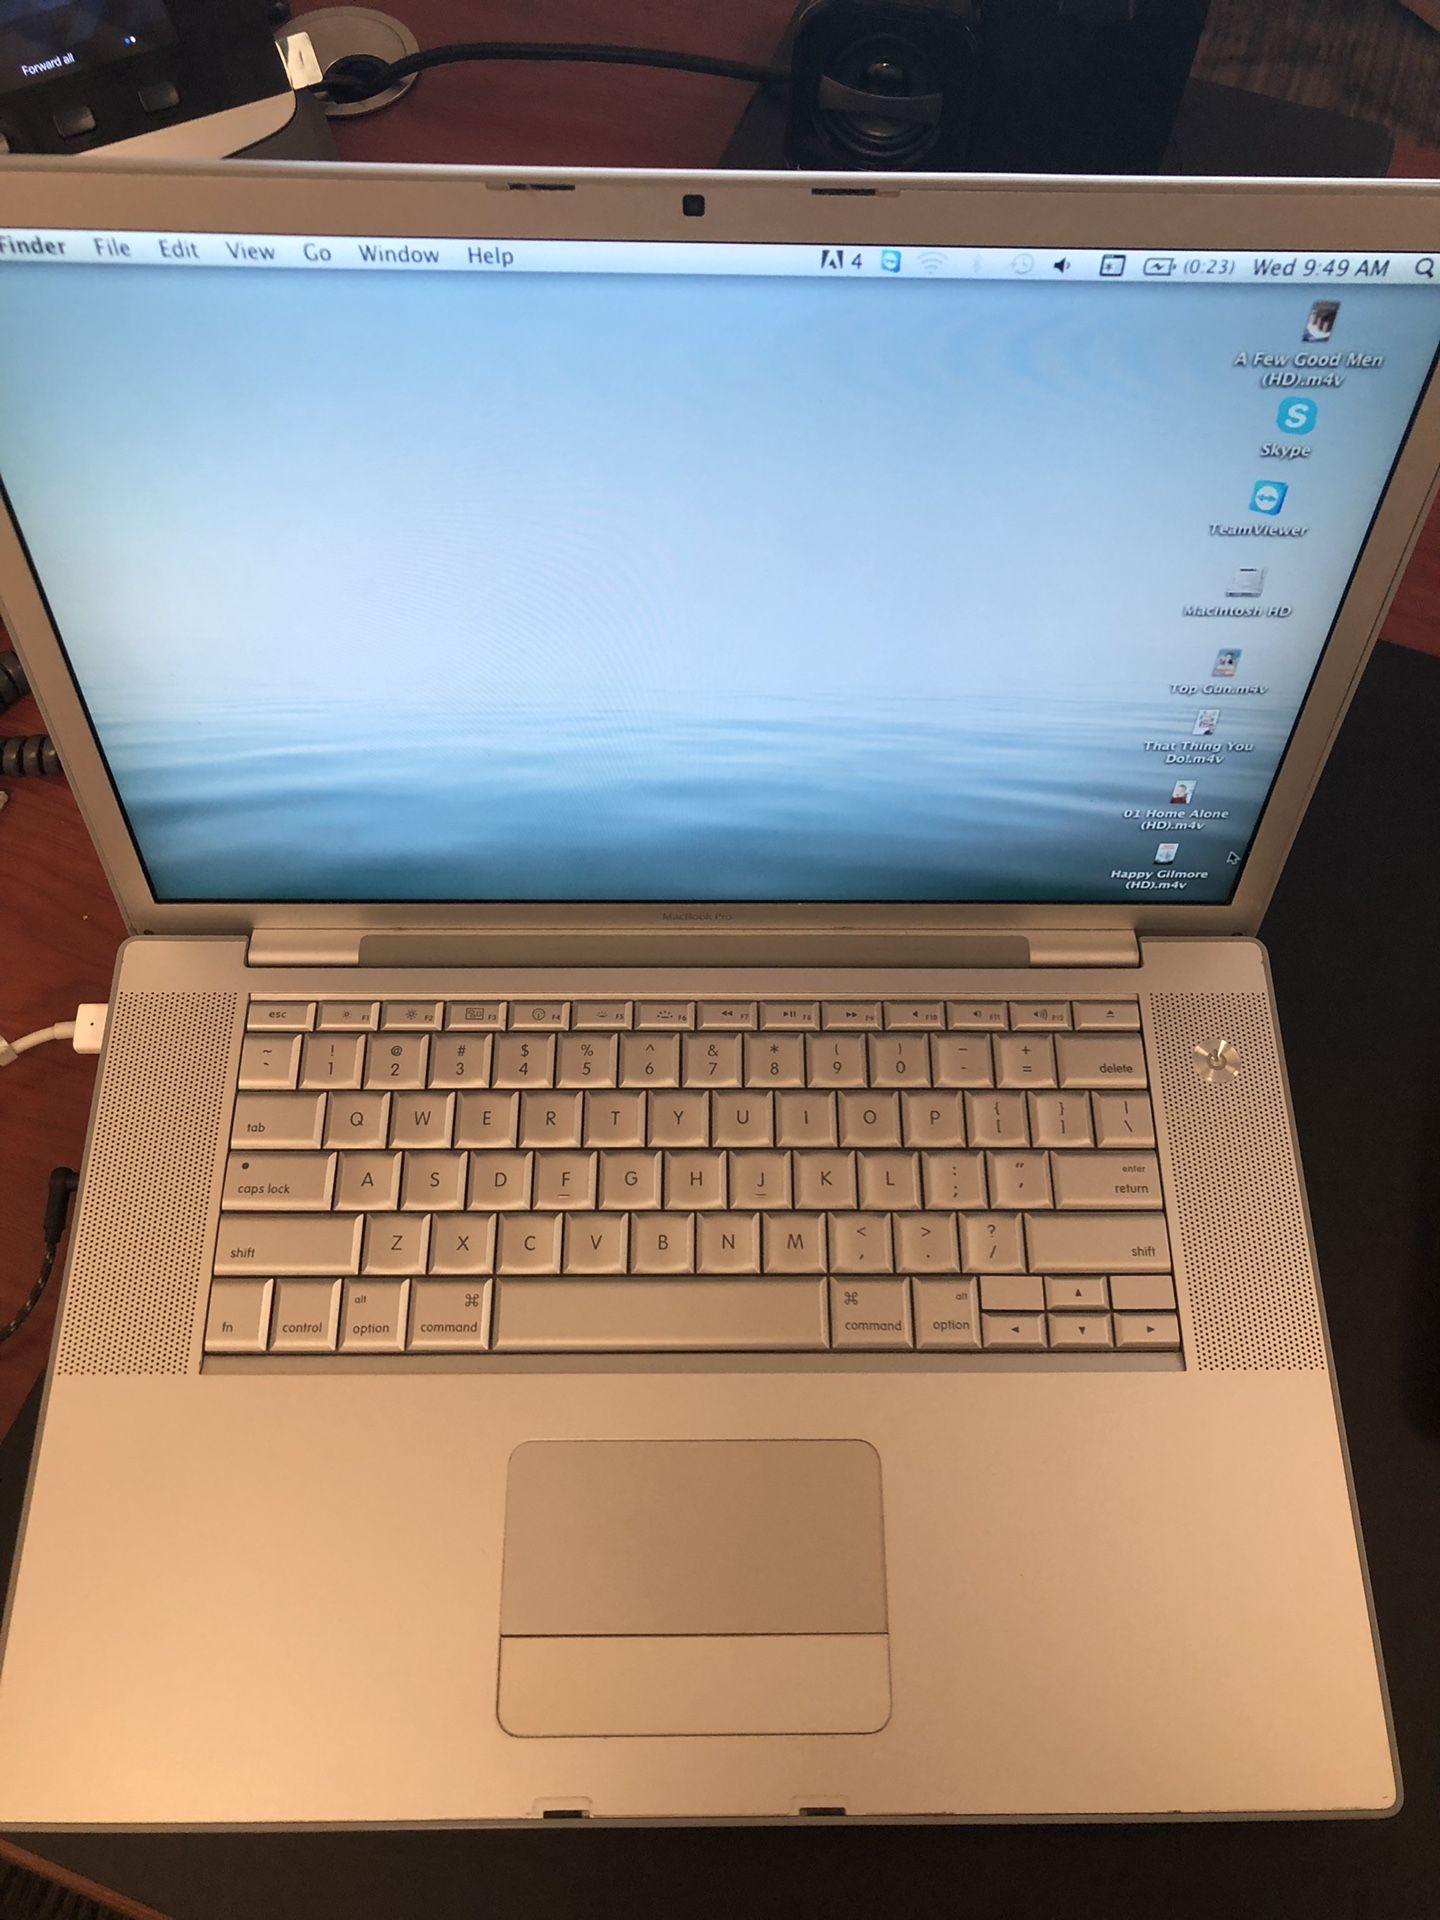 Older MacBook Pro laptop